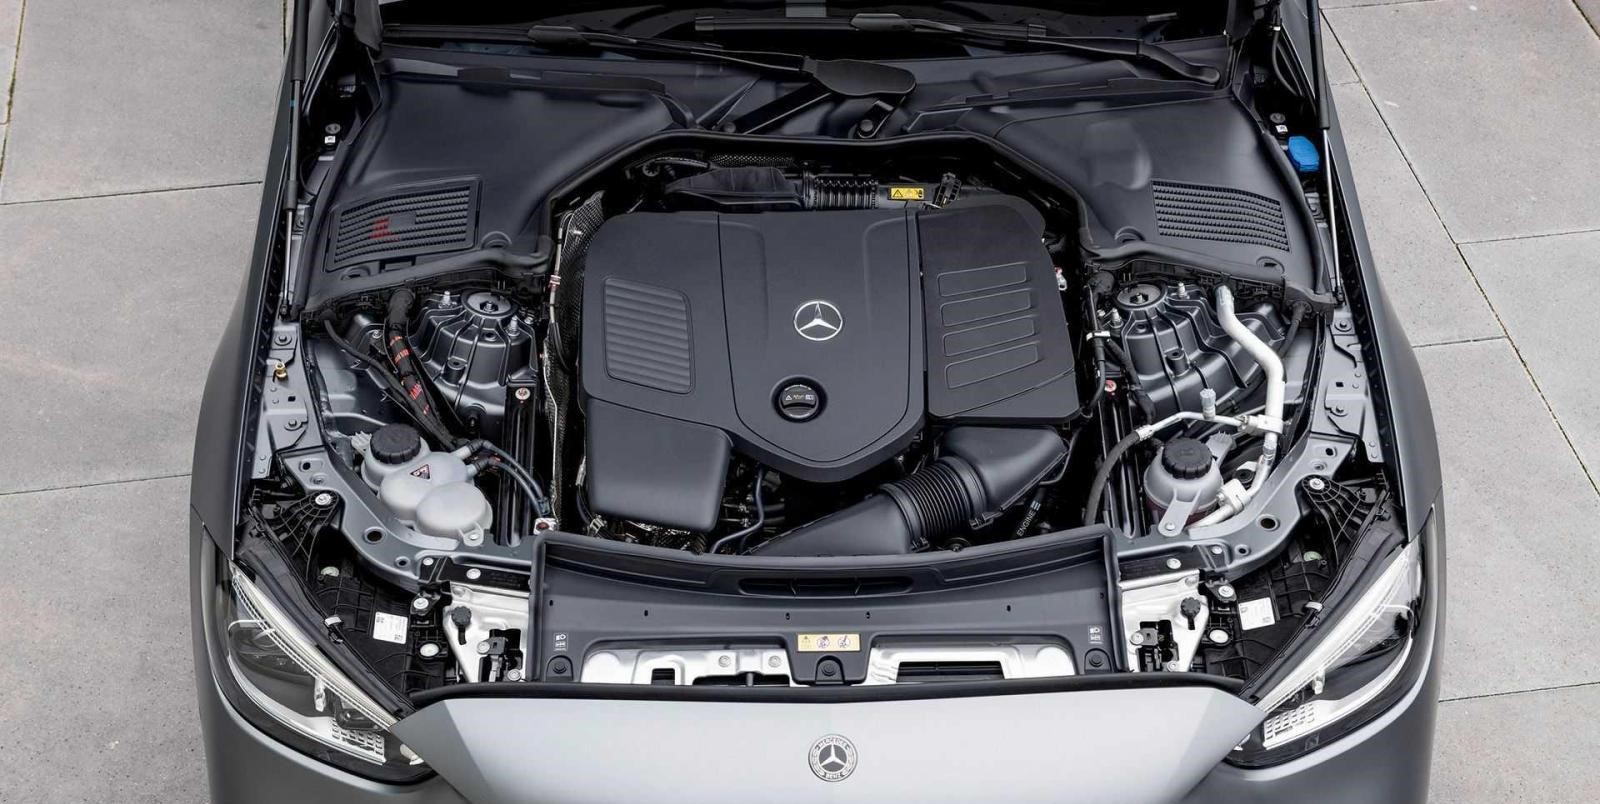 Mercedes-Benz C-Class 2022 didukung mesin turbo sehingga efisien dan sangat bertenaga